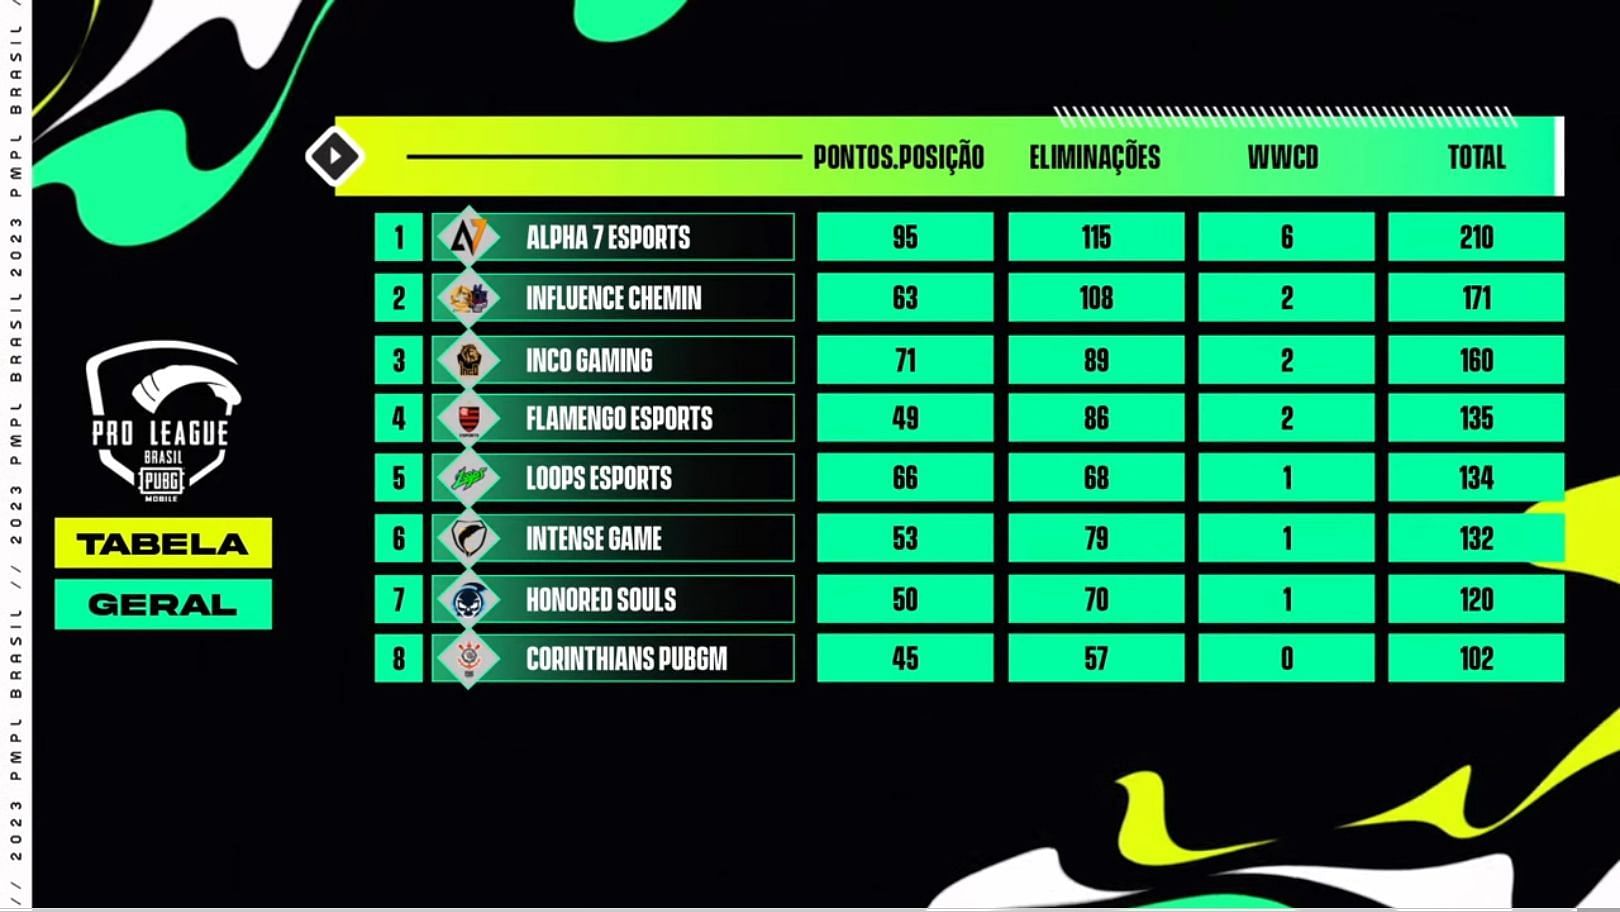 PUBG Mobile Pro League Brazil 2023 Spring: Teams, format, schedule